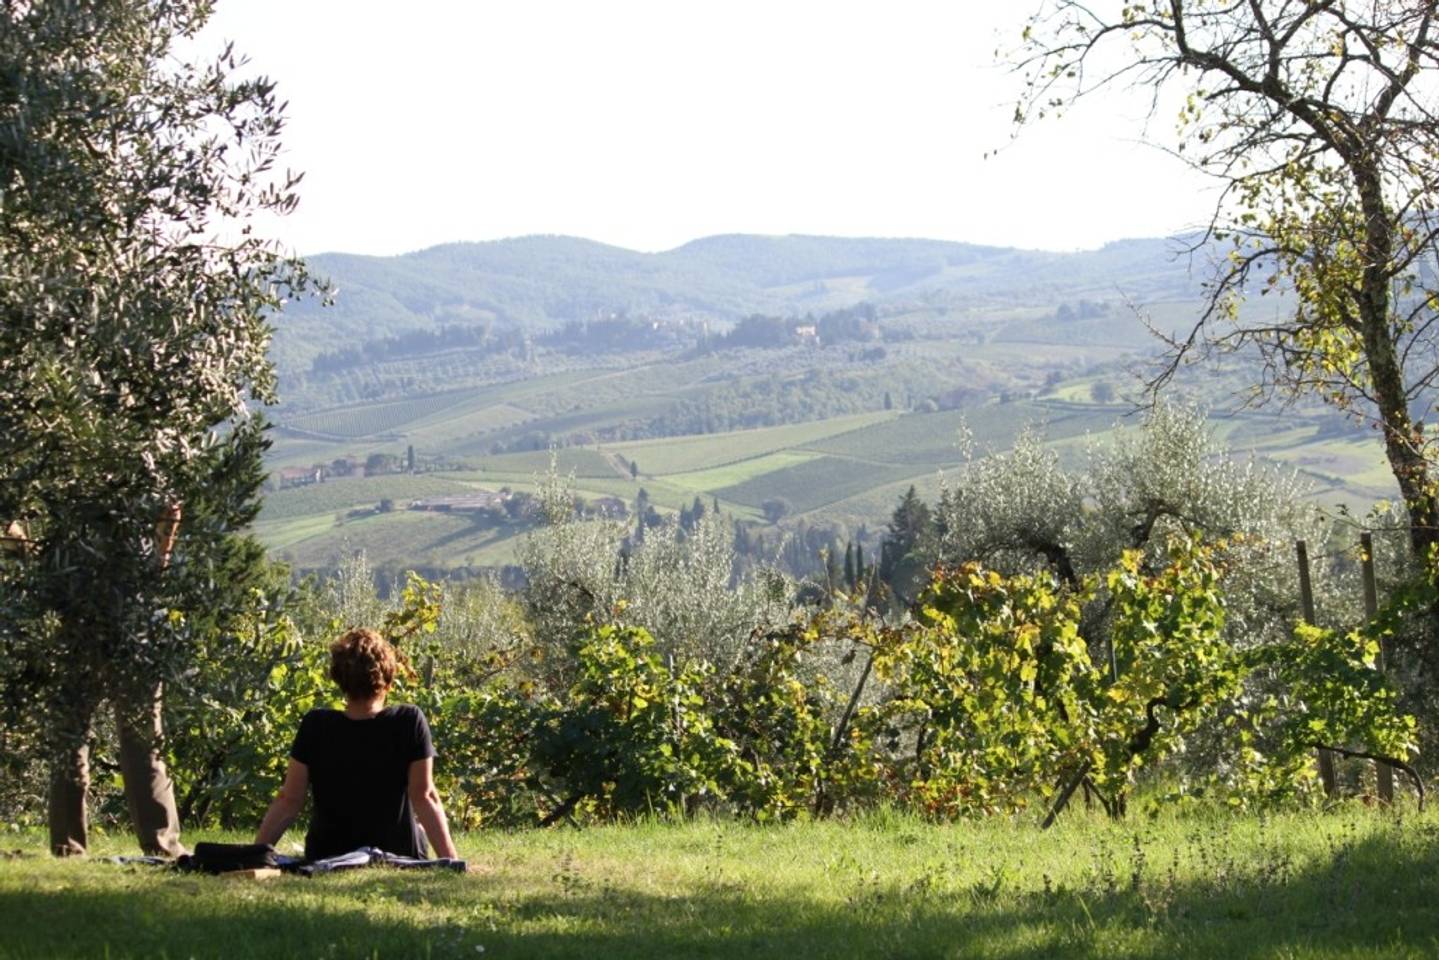 Ancora del Chianti, paesaggio mozzafiato sulle verdi colline del Chianti